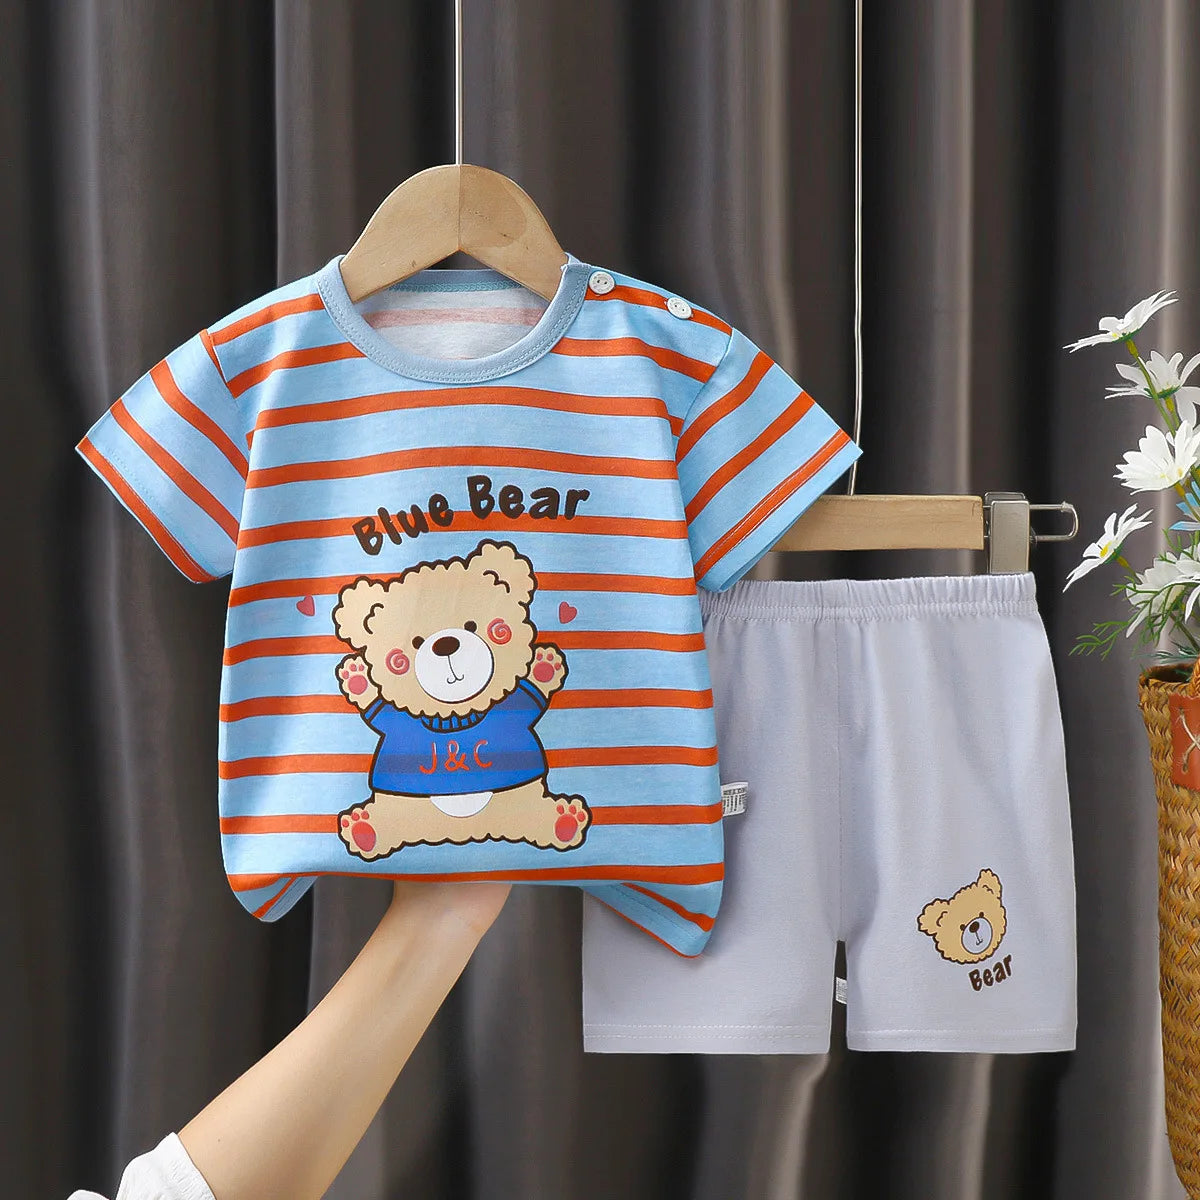 2-Piece Toddler Boy Summer Short Sleeve Outfit Set